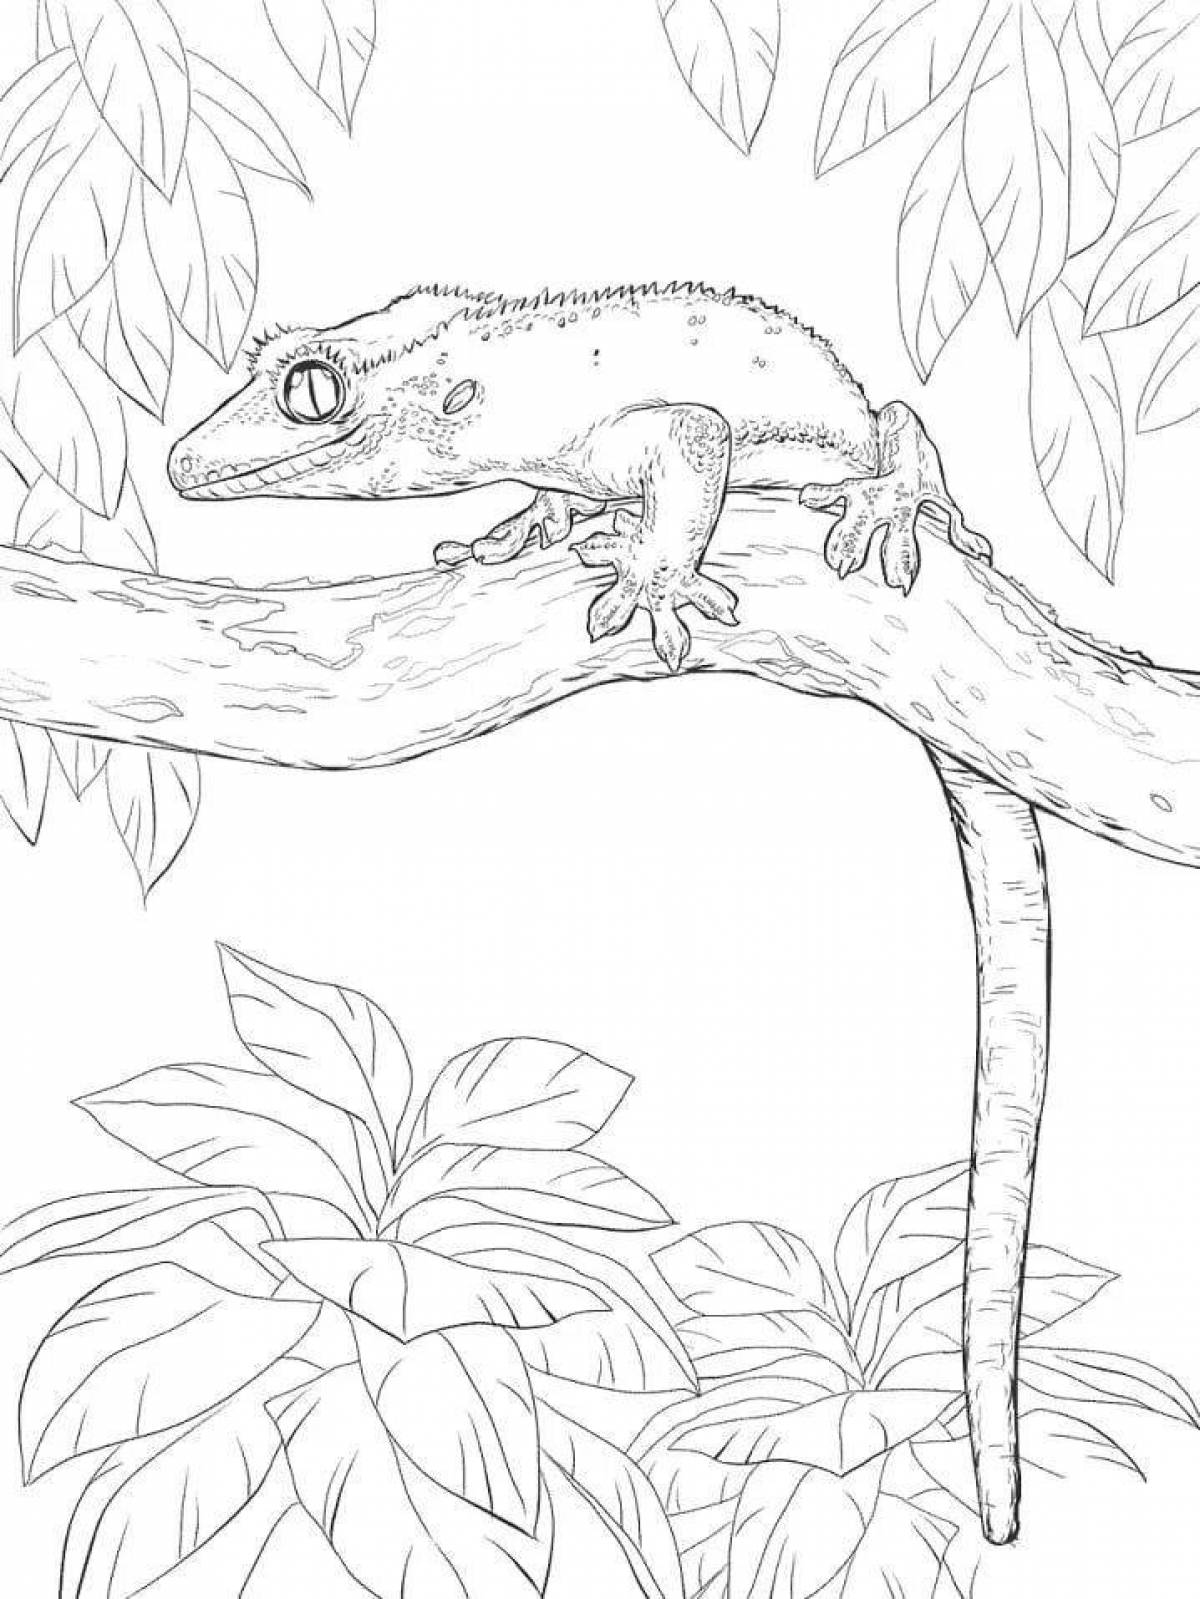 Adorable gecko coloring book